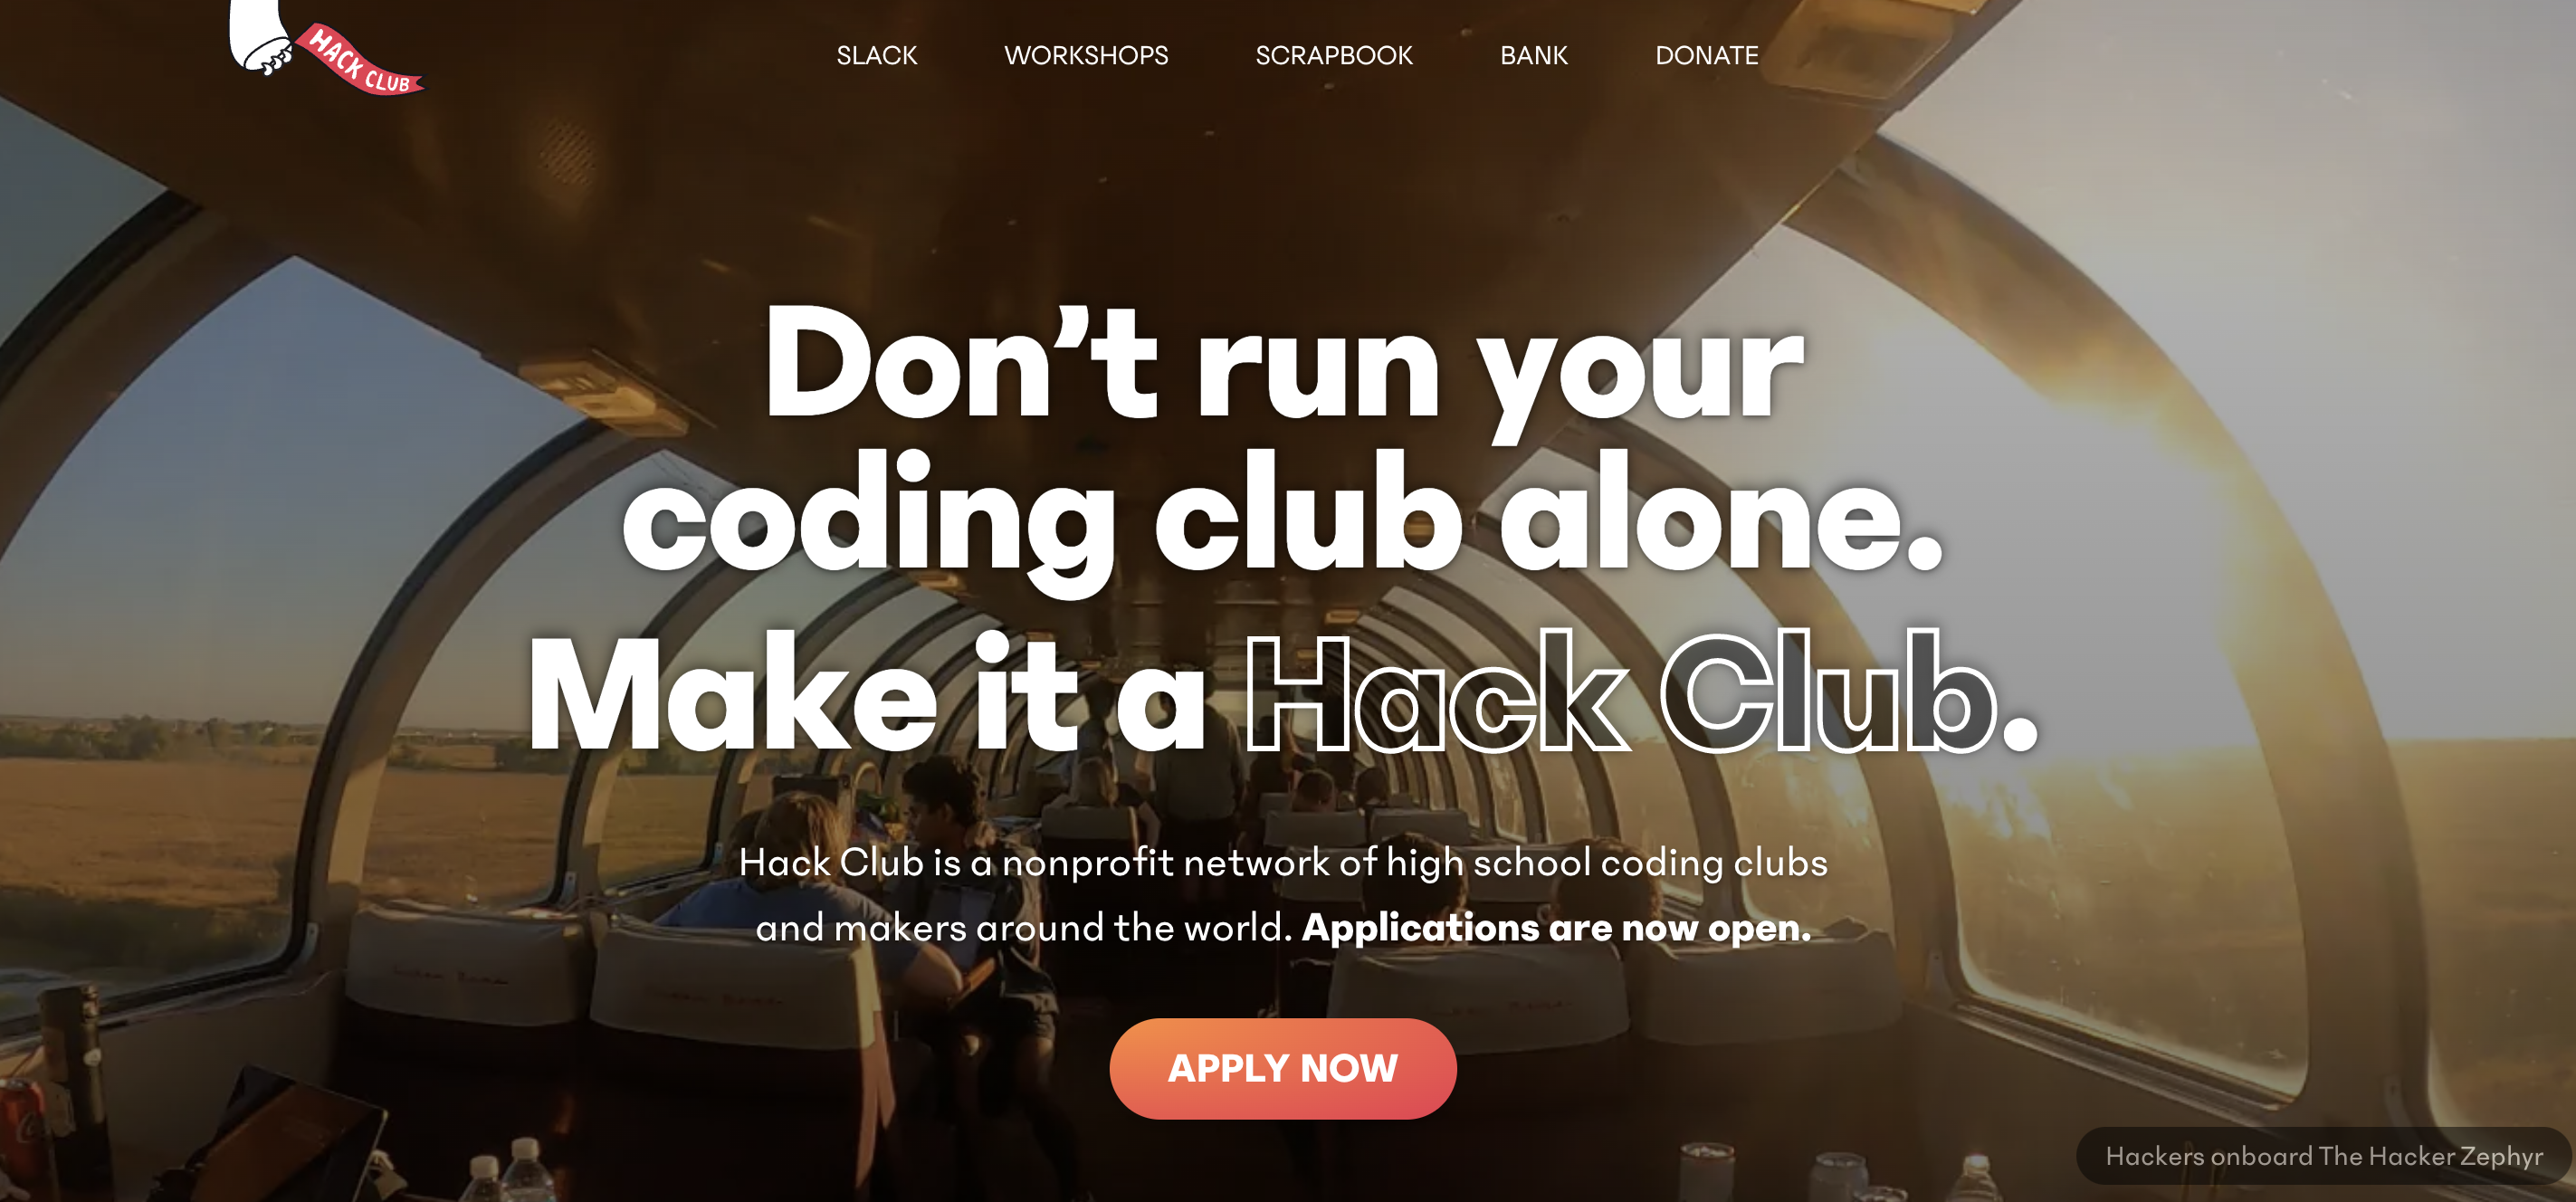 https://cloud-7sokrhjmk-hack-club-bot.vercel.app/0captura_de_pantalla_2021-10-28_a_la_s__23.56.01.png